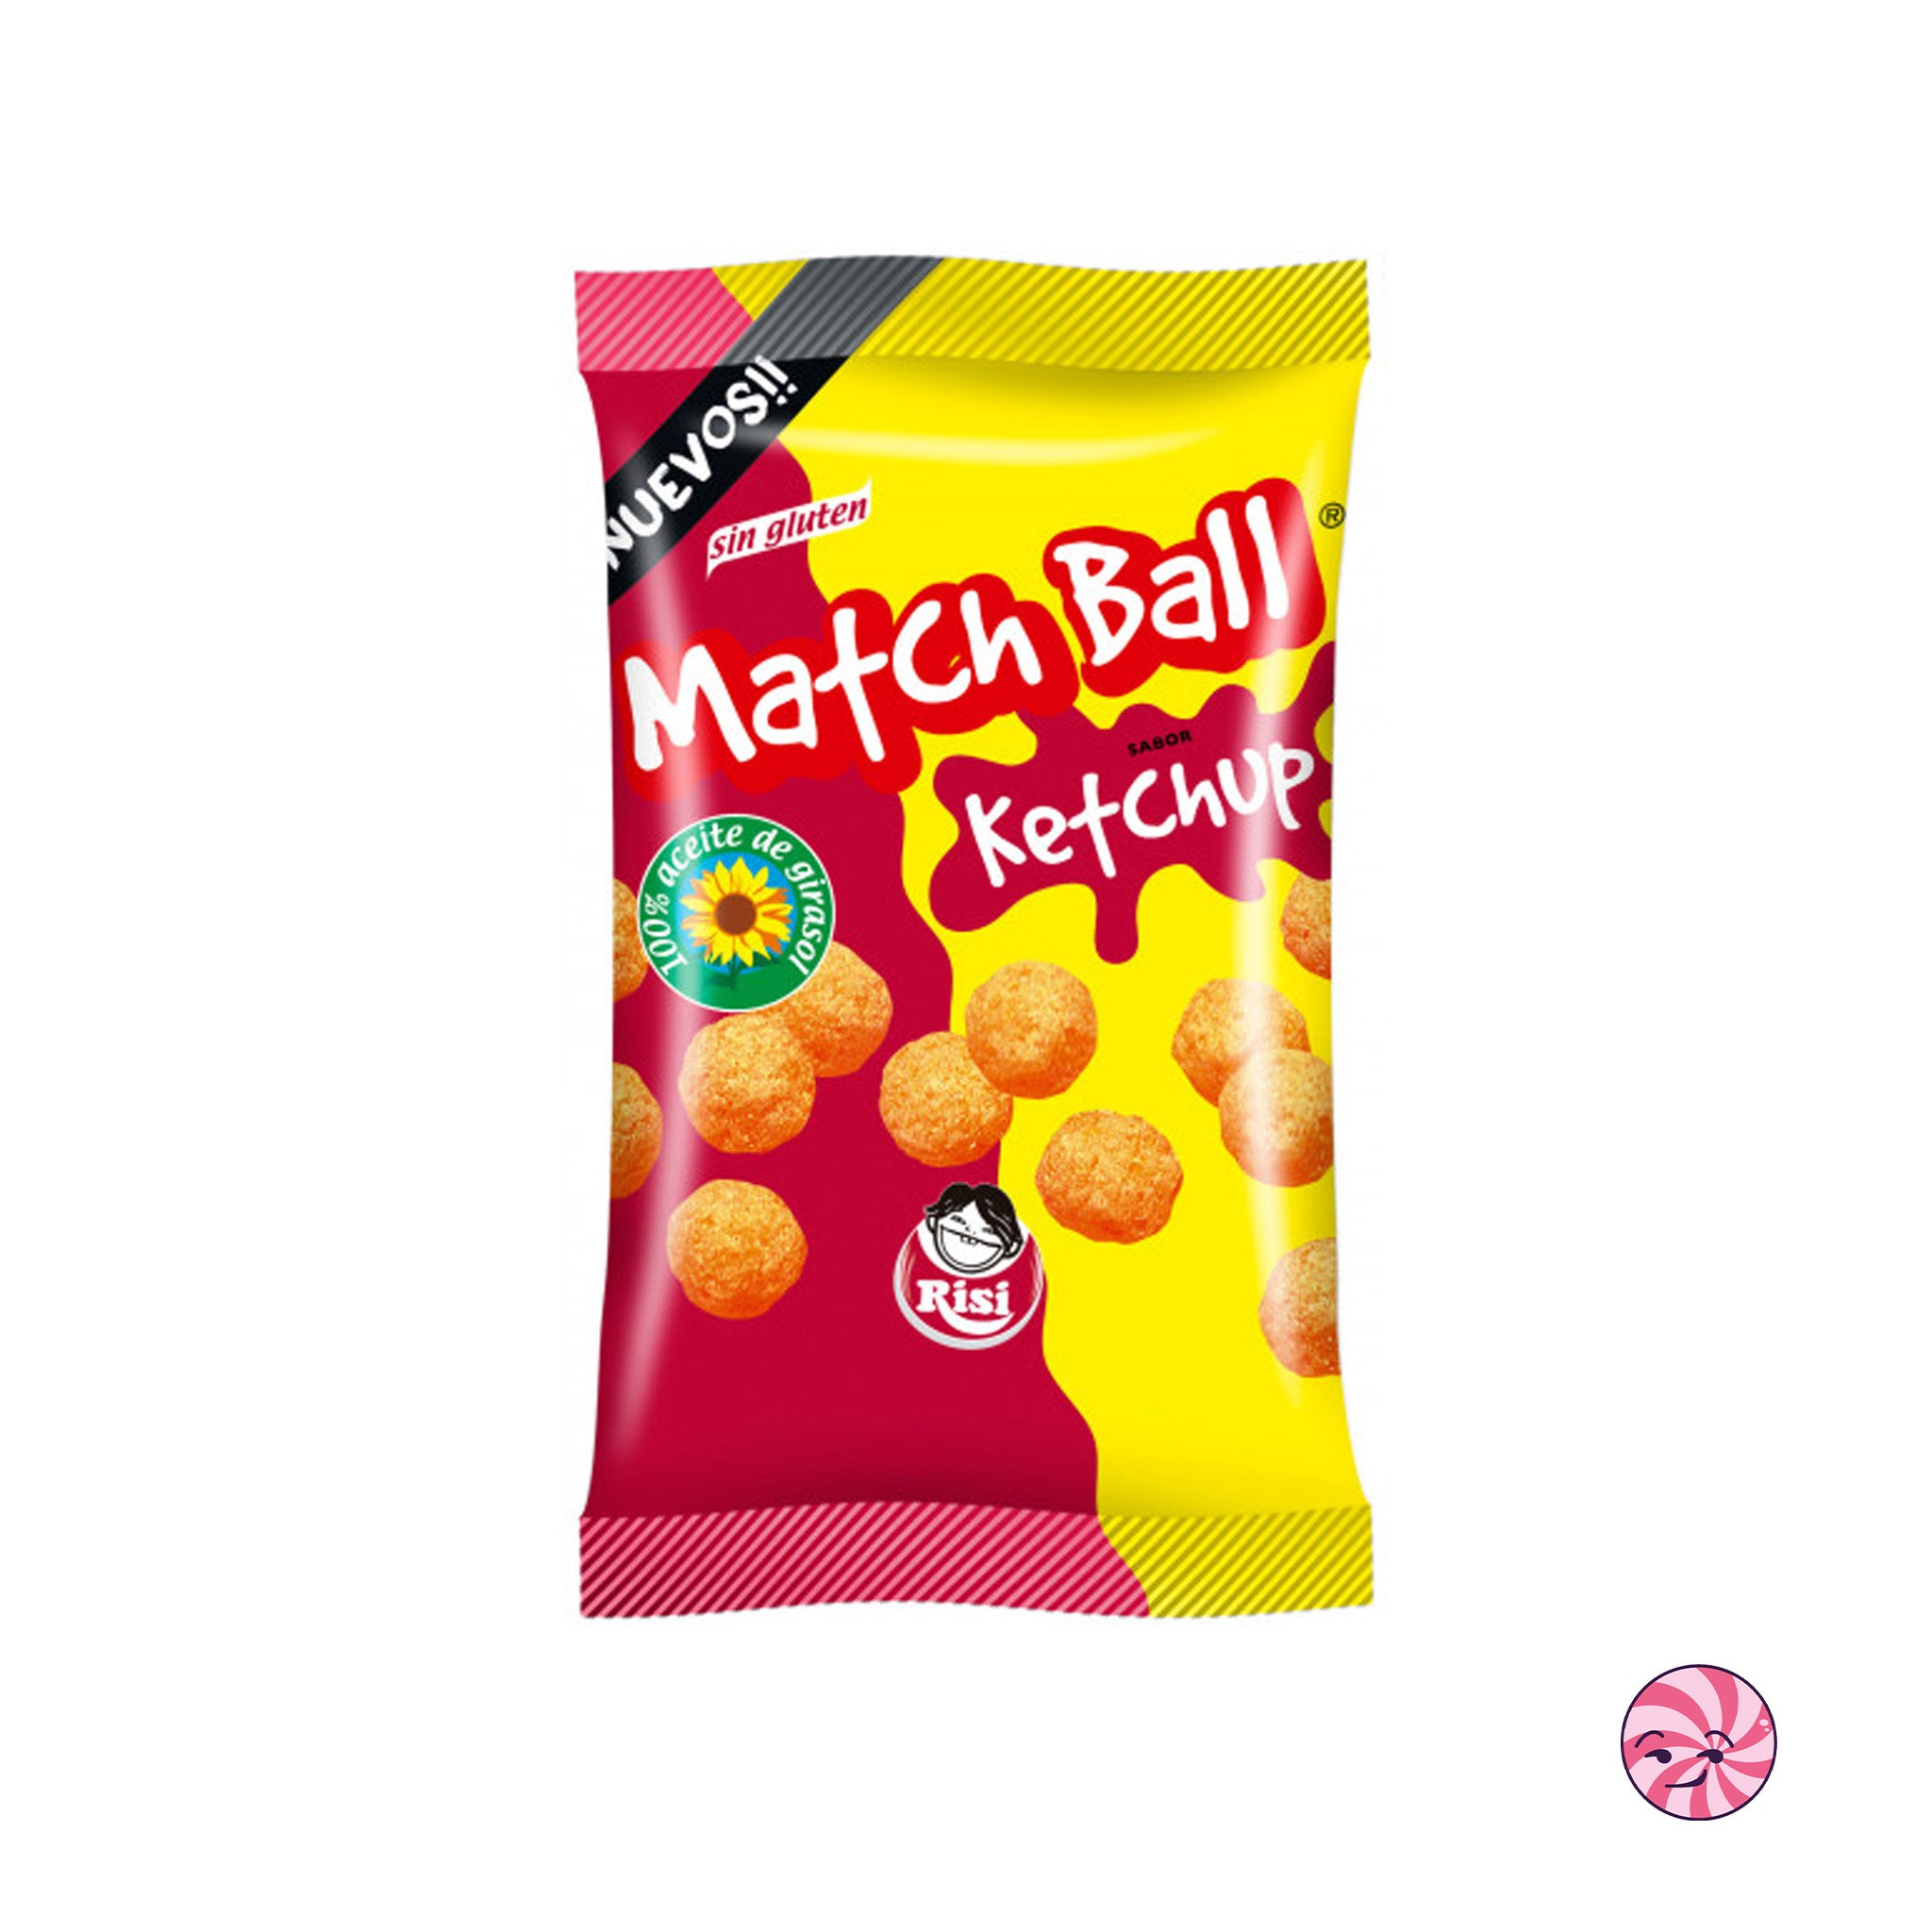 Match Ball Ketchup